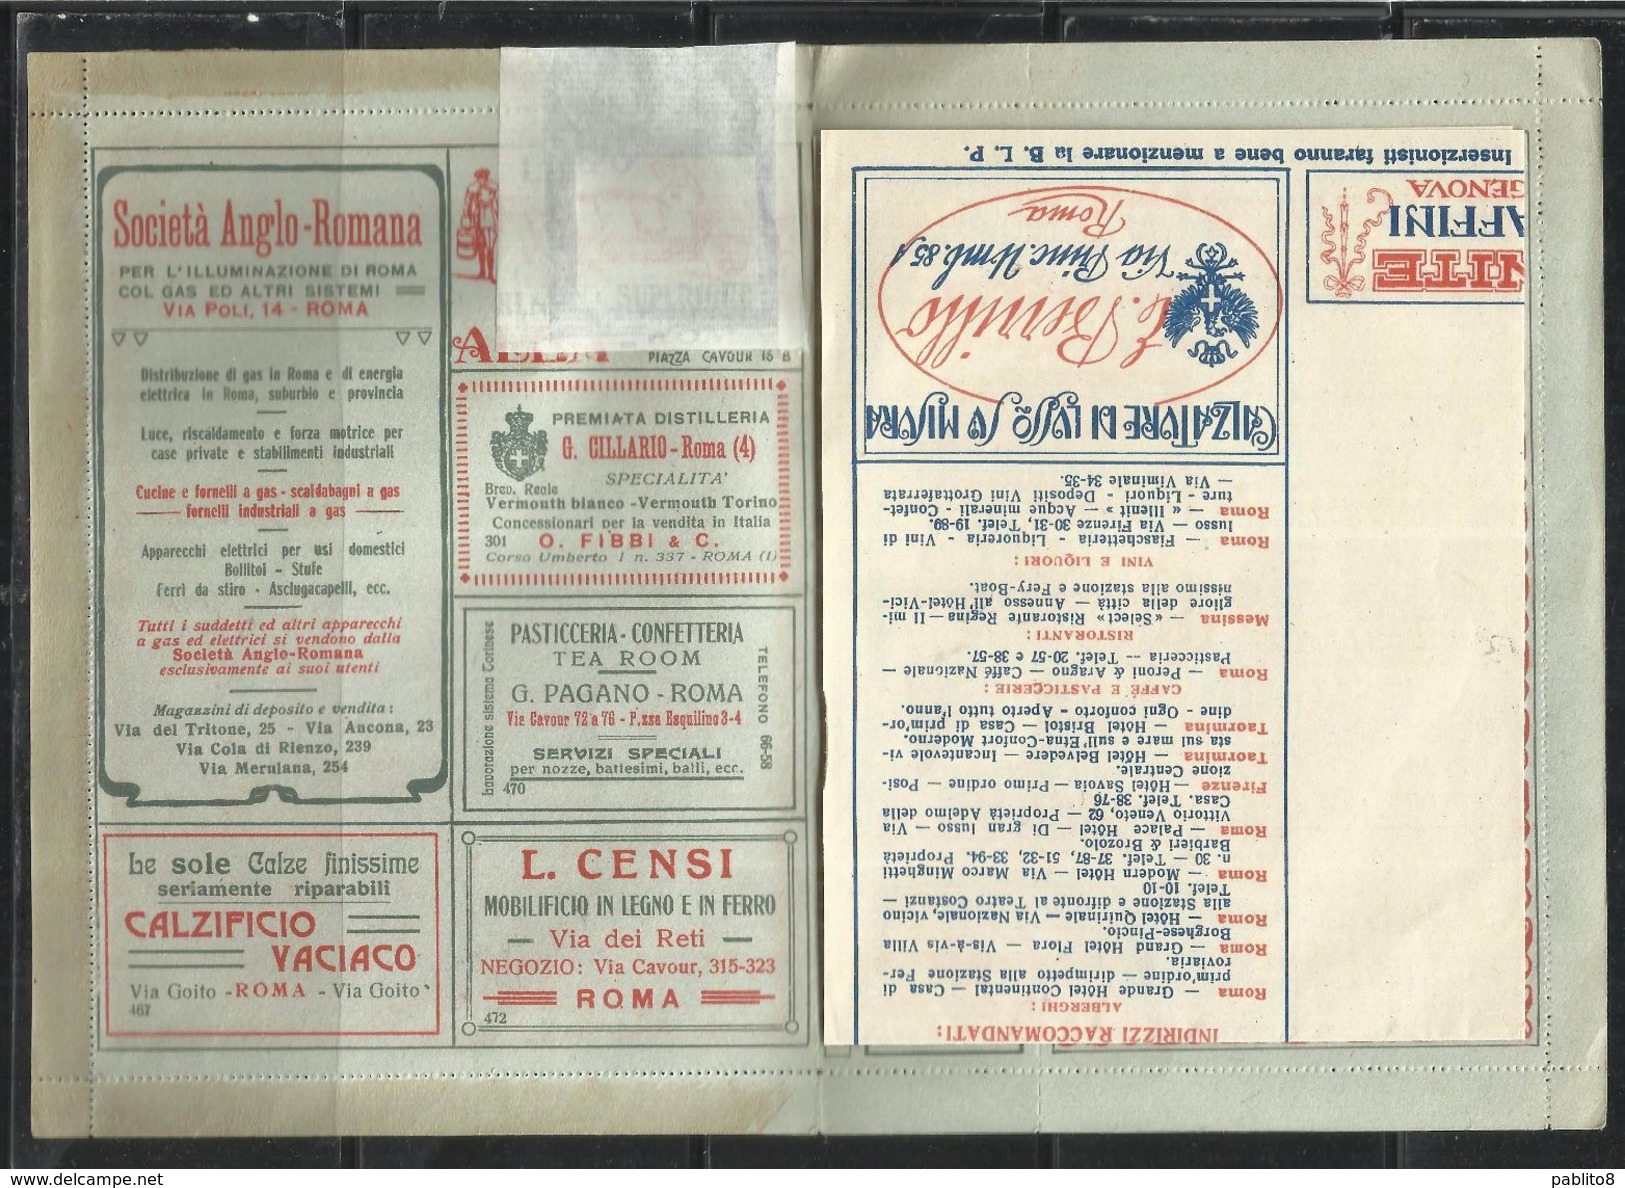 ITALY KINGDOM ITALIA REGNO 1921 BLP Busta Lettera Postale 20 Cent. Pubblicità LAMPO NUOVA FIRMATA UNUSED SIGNED - Timbres Pour Envel. Publicitaires (BLP)